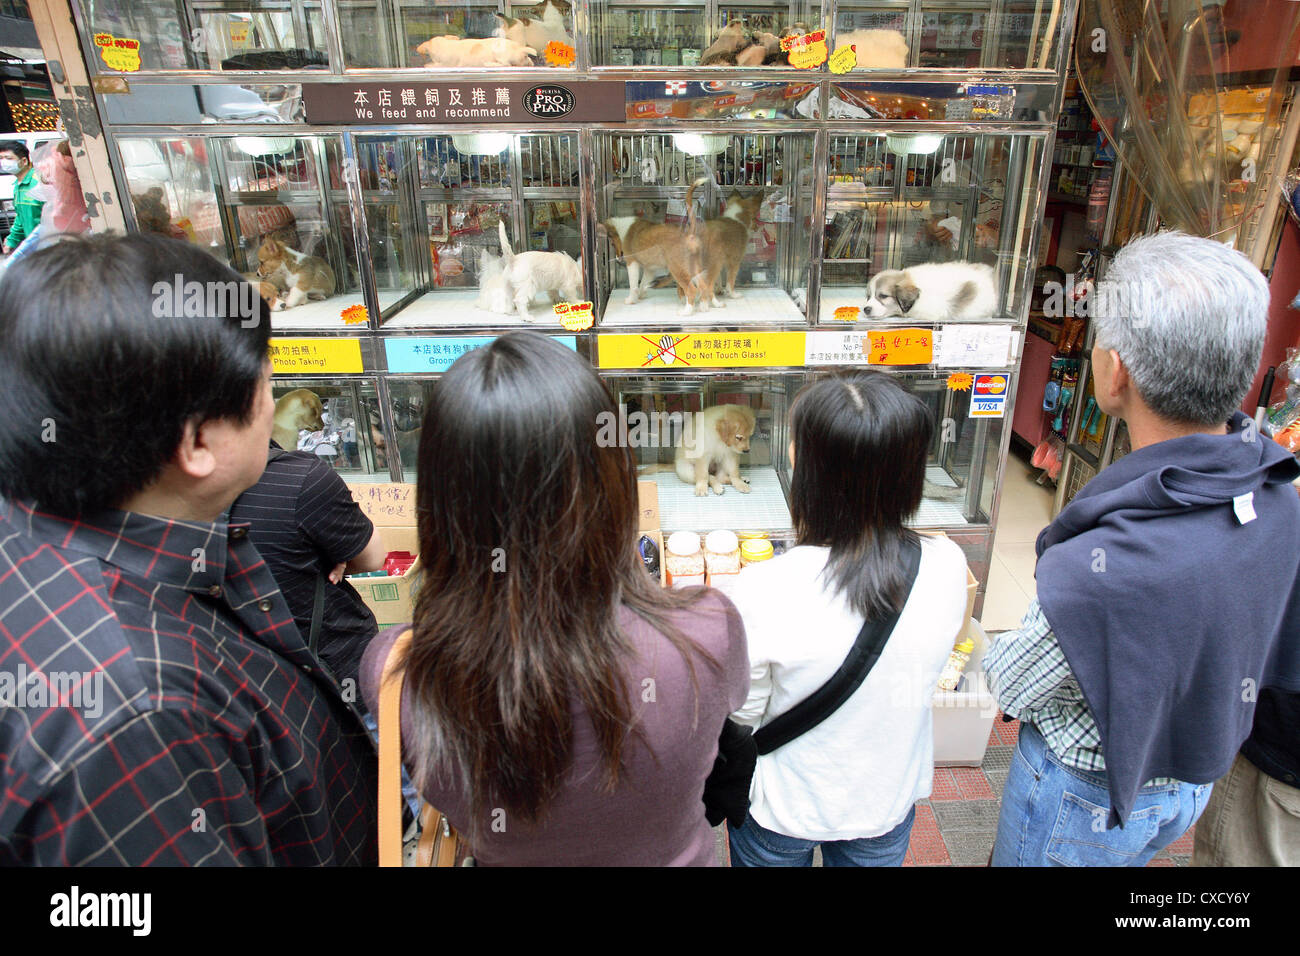 Hong Kong, Menschen aus einer Tierhandlung mit Hunden im Schaufenster  Stockfotografie - Alamy